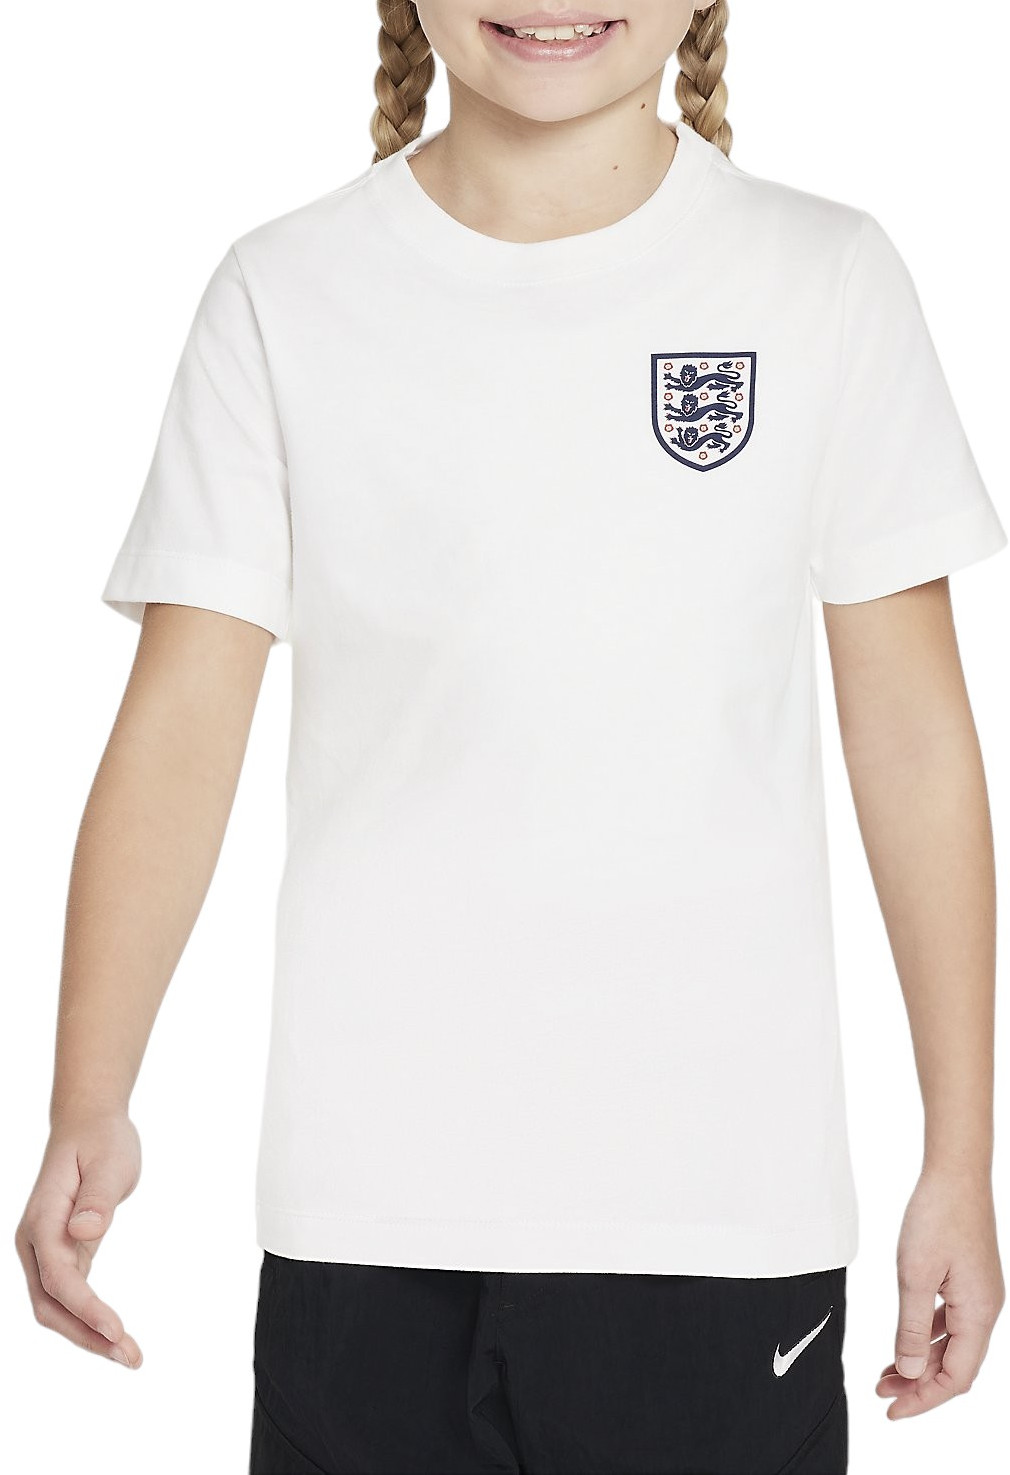 Tričko s krátkým rukávem pro větší děti Nike Anglie Crest